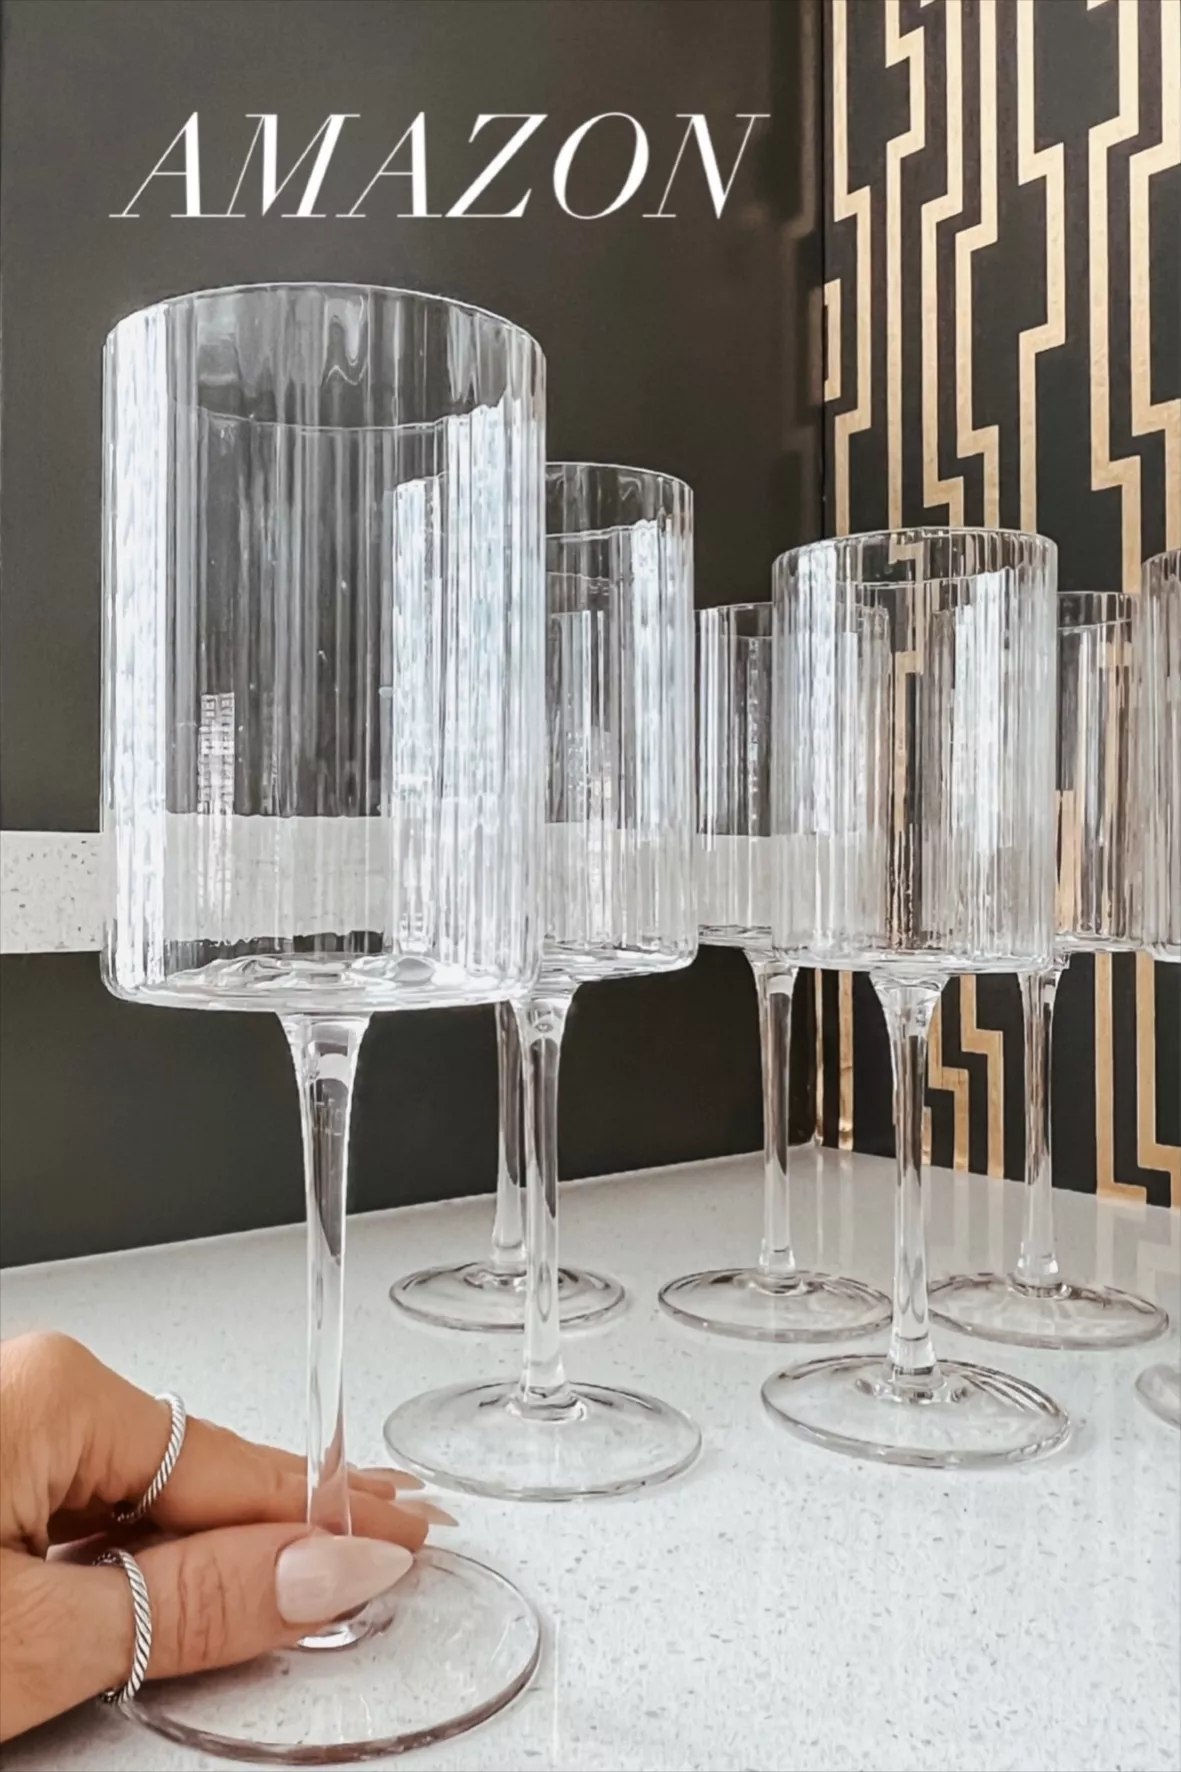 JoyJolt Elle Fluted Cylinder Champagne Glass - Set of 2